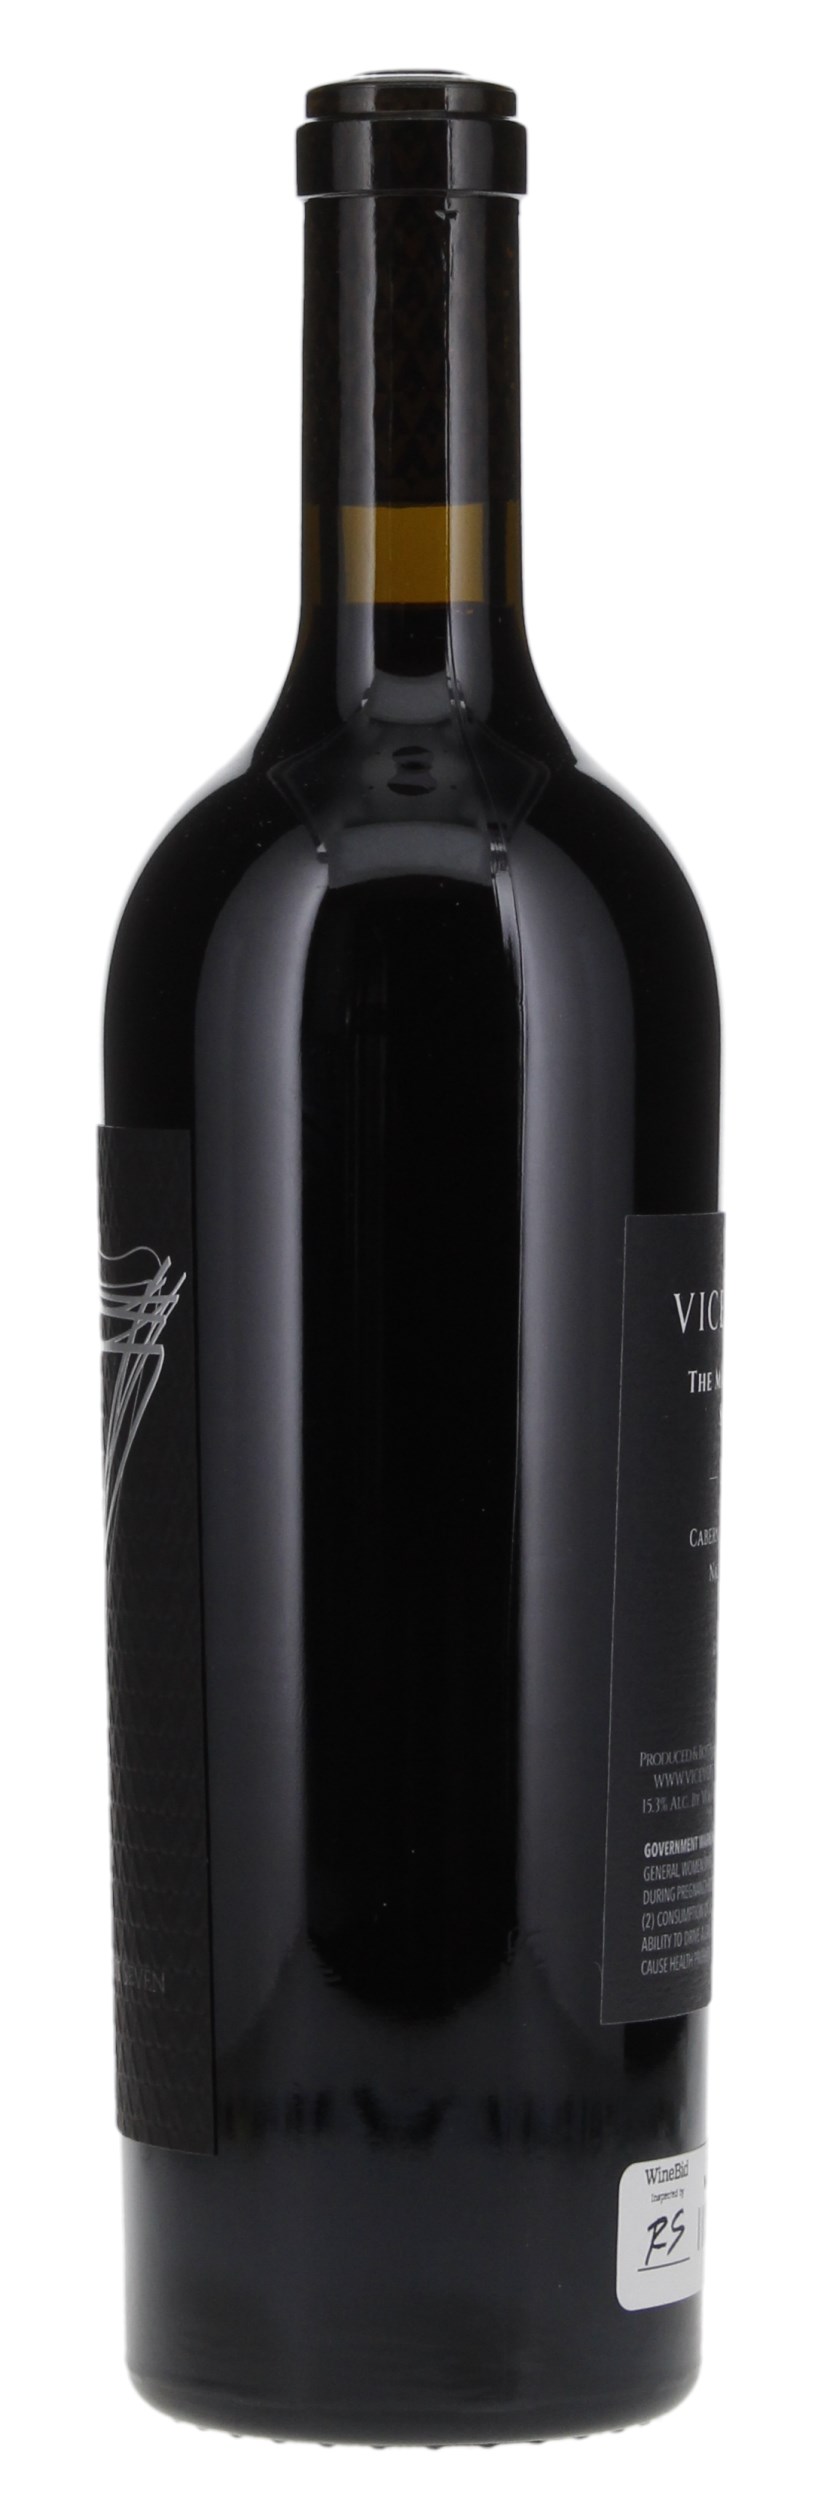 2016 Vice Versa The Magnificent Seven Cabernet Sauvignon, 750ml